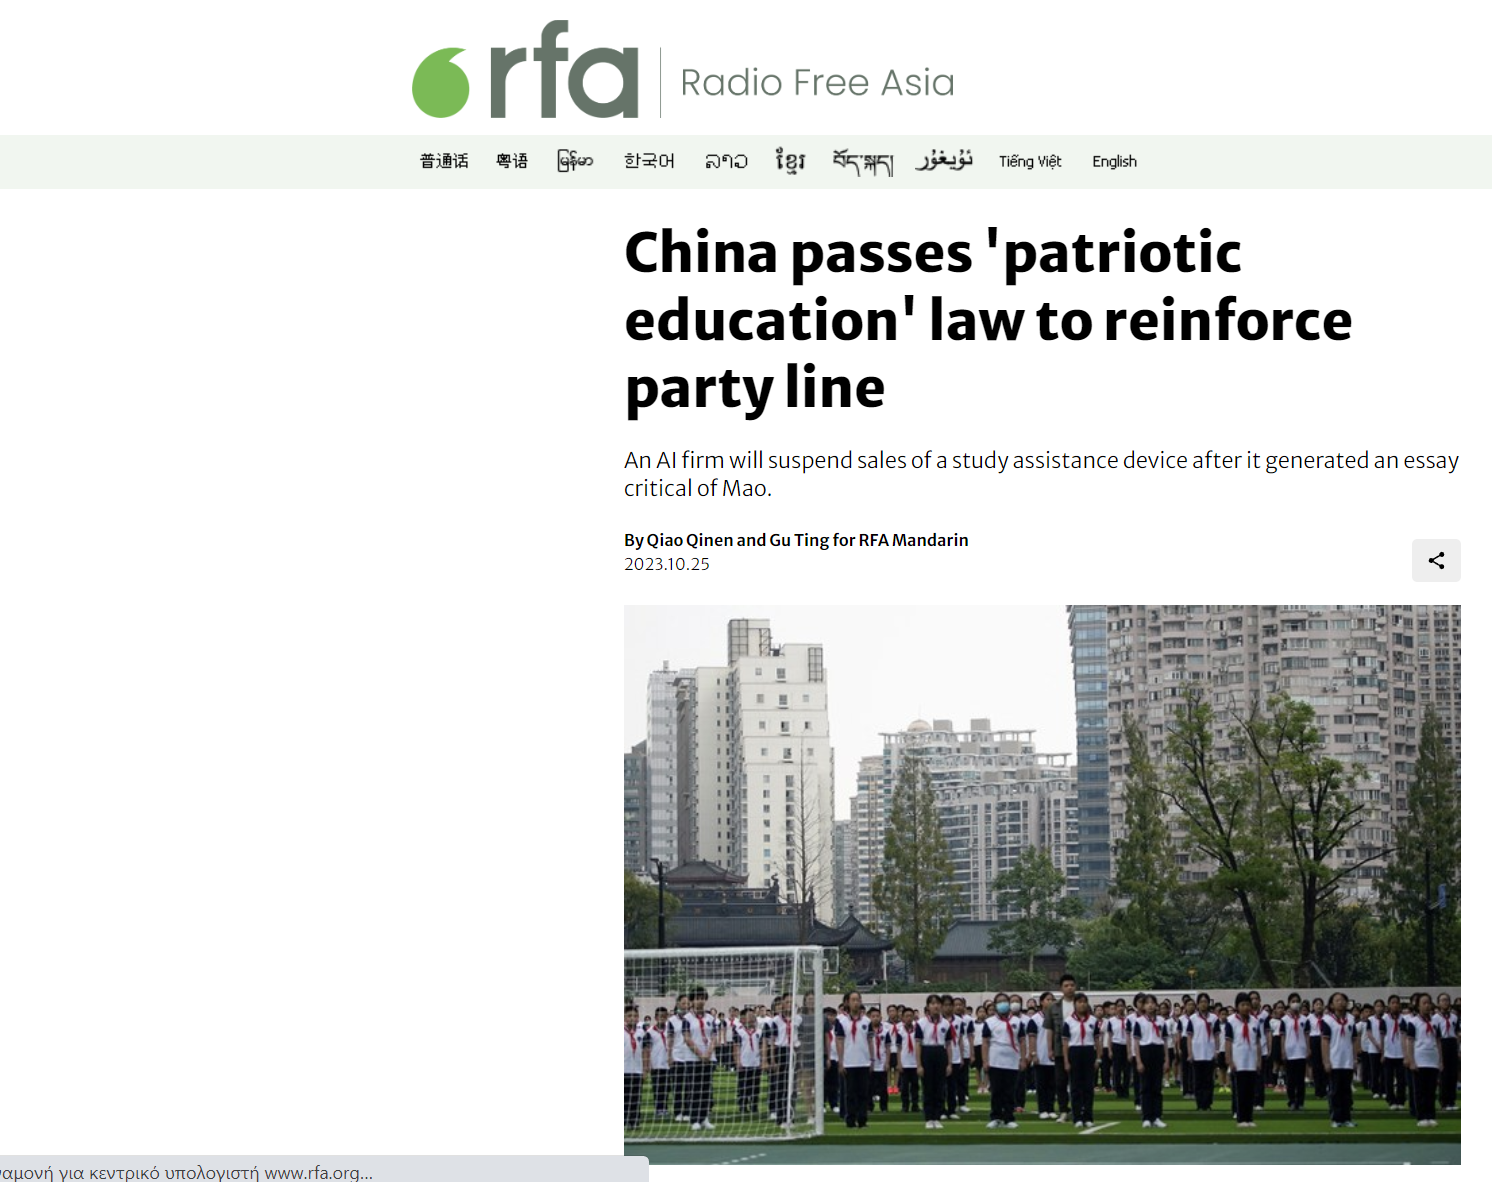 Radio Free Asia: Η Κίνα ψηφίζει νόμο για την «πατριωτική εκπαίδευση» για να ενισχύσει τη γραμμή του κόμματος